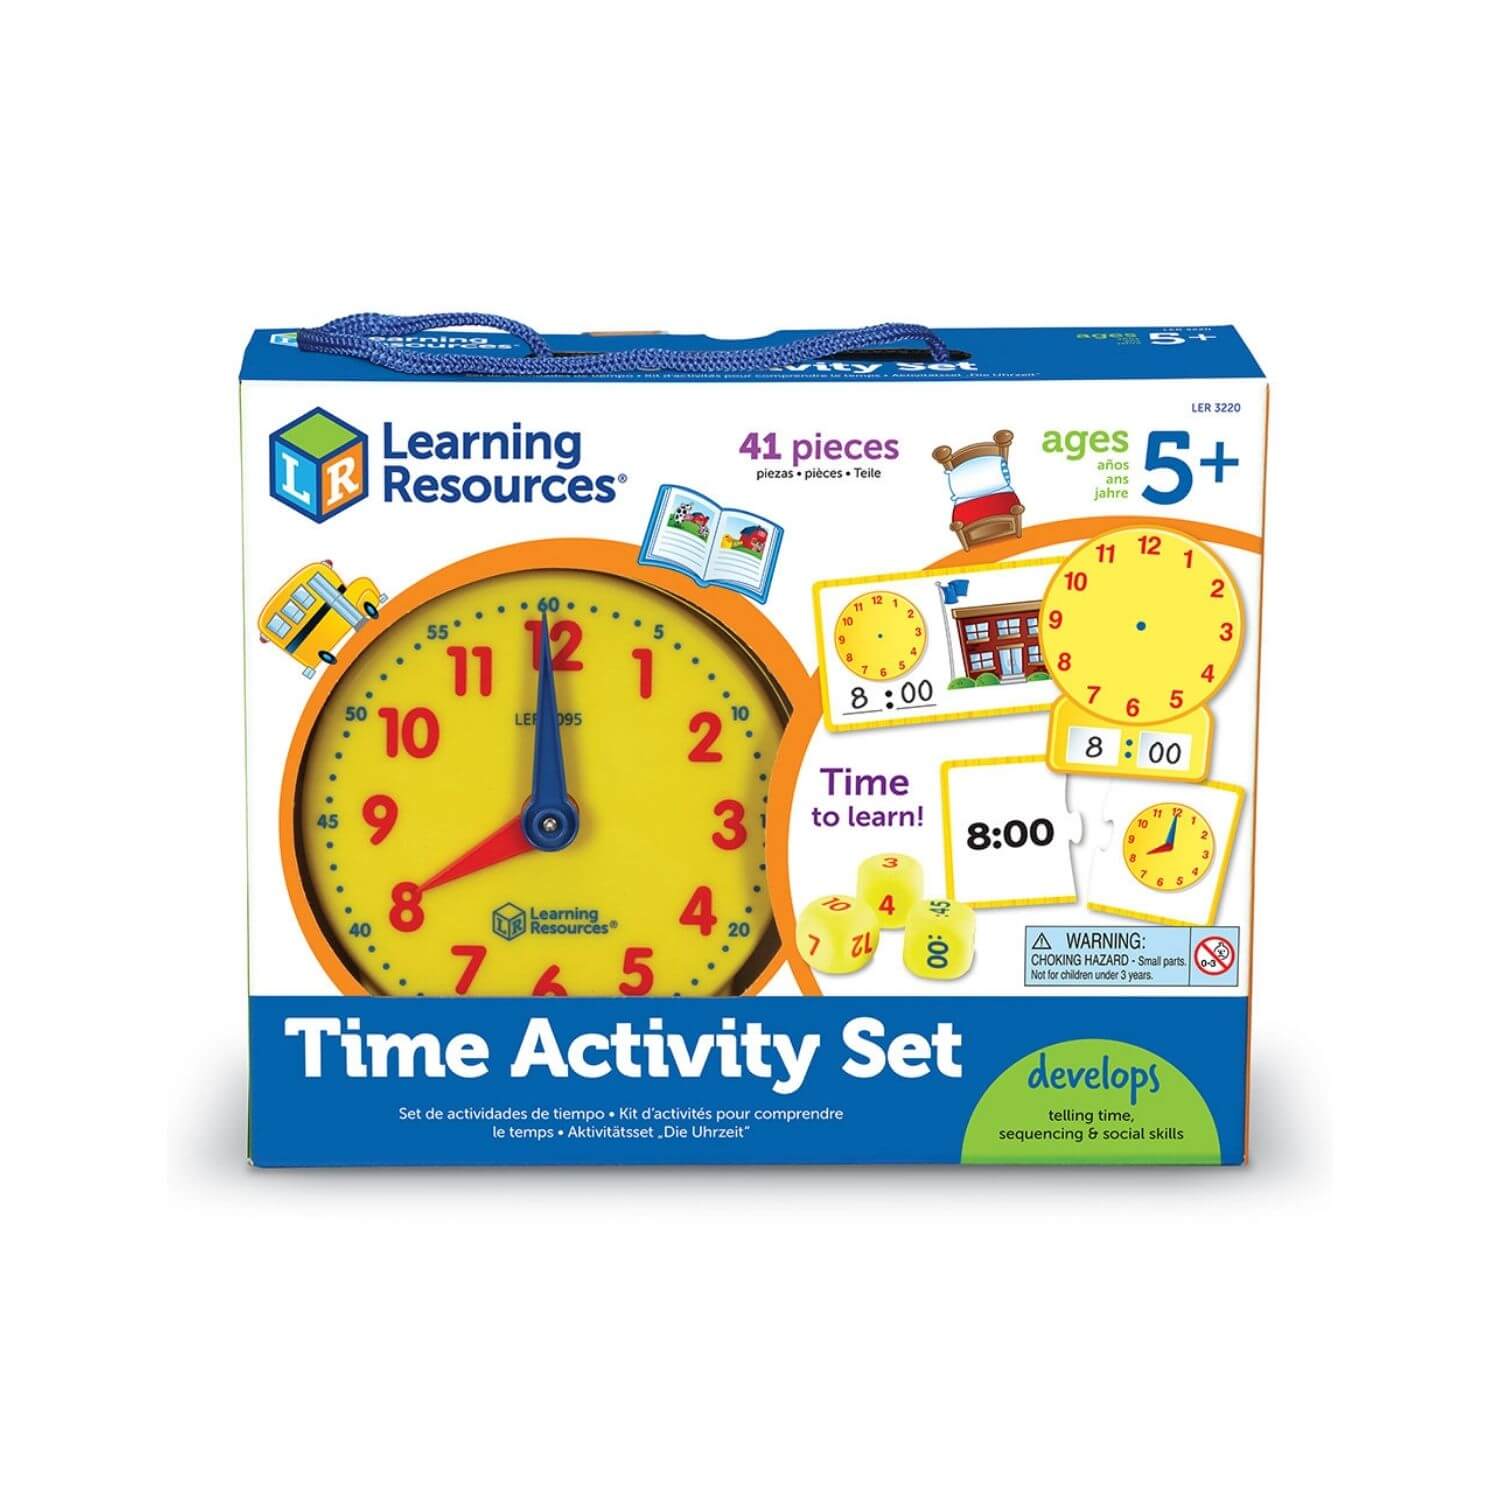 Игра Learning time. Learn времена. Timing Learning игра. Лернинг ресурс игрушки. Игра обучение времени